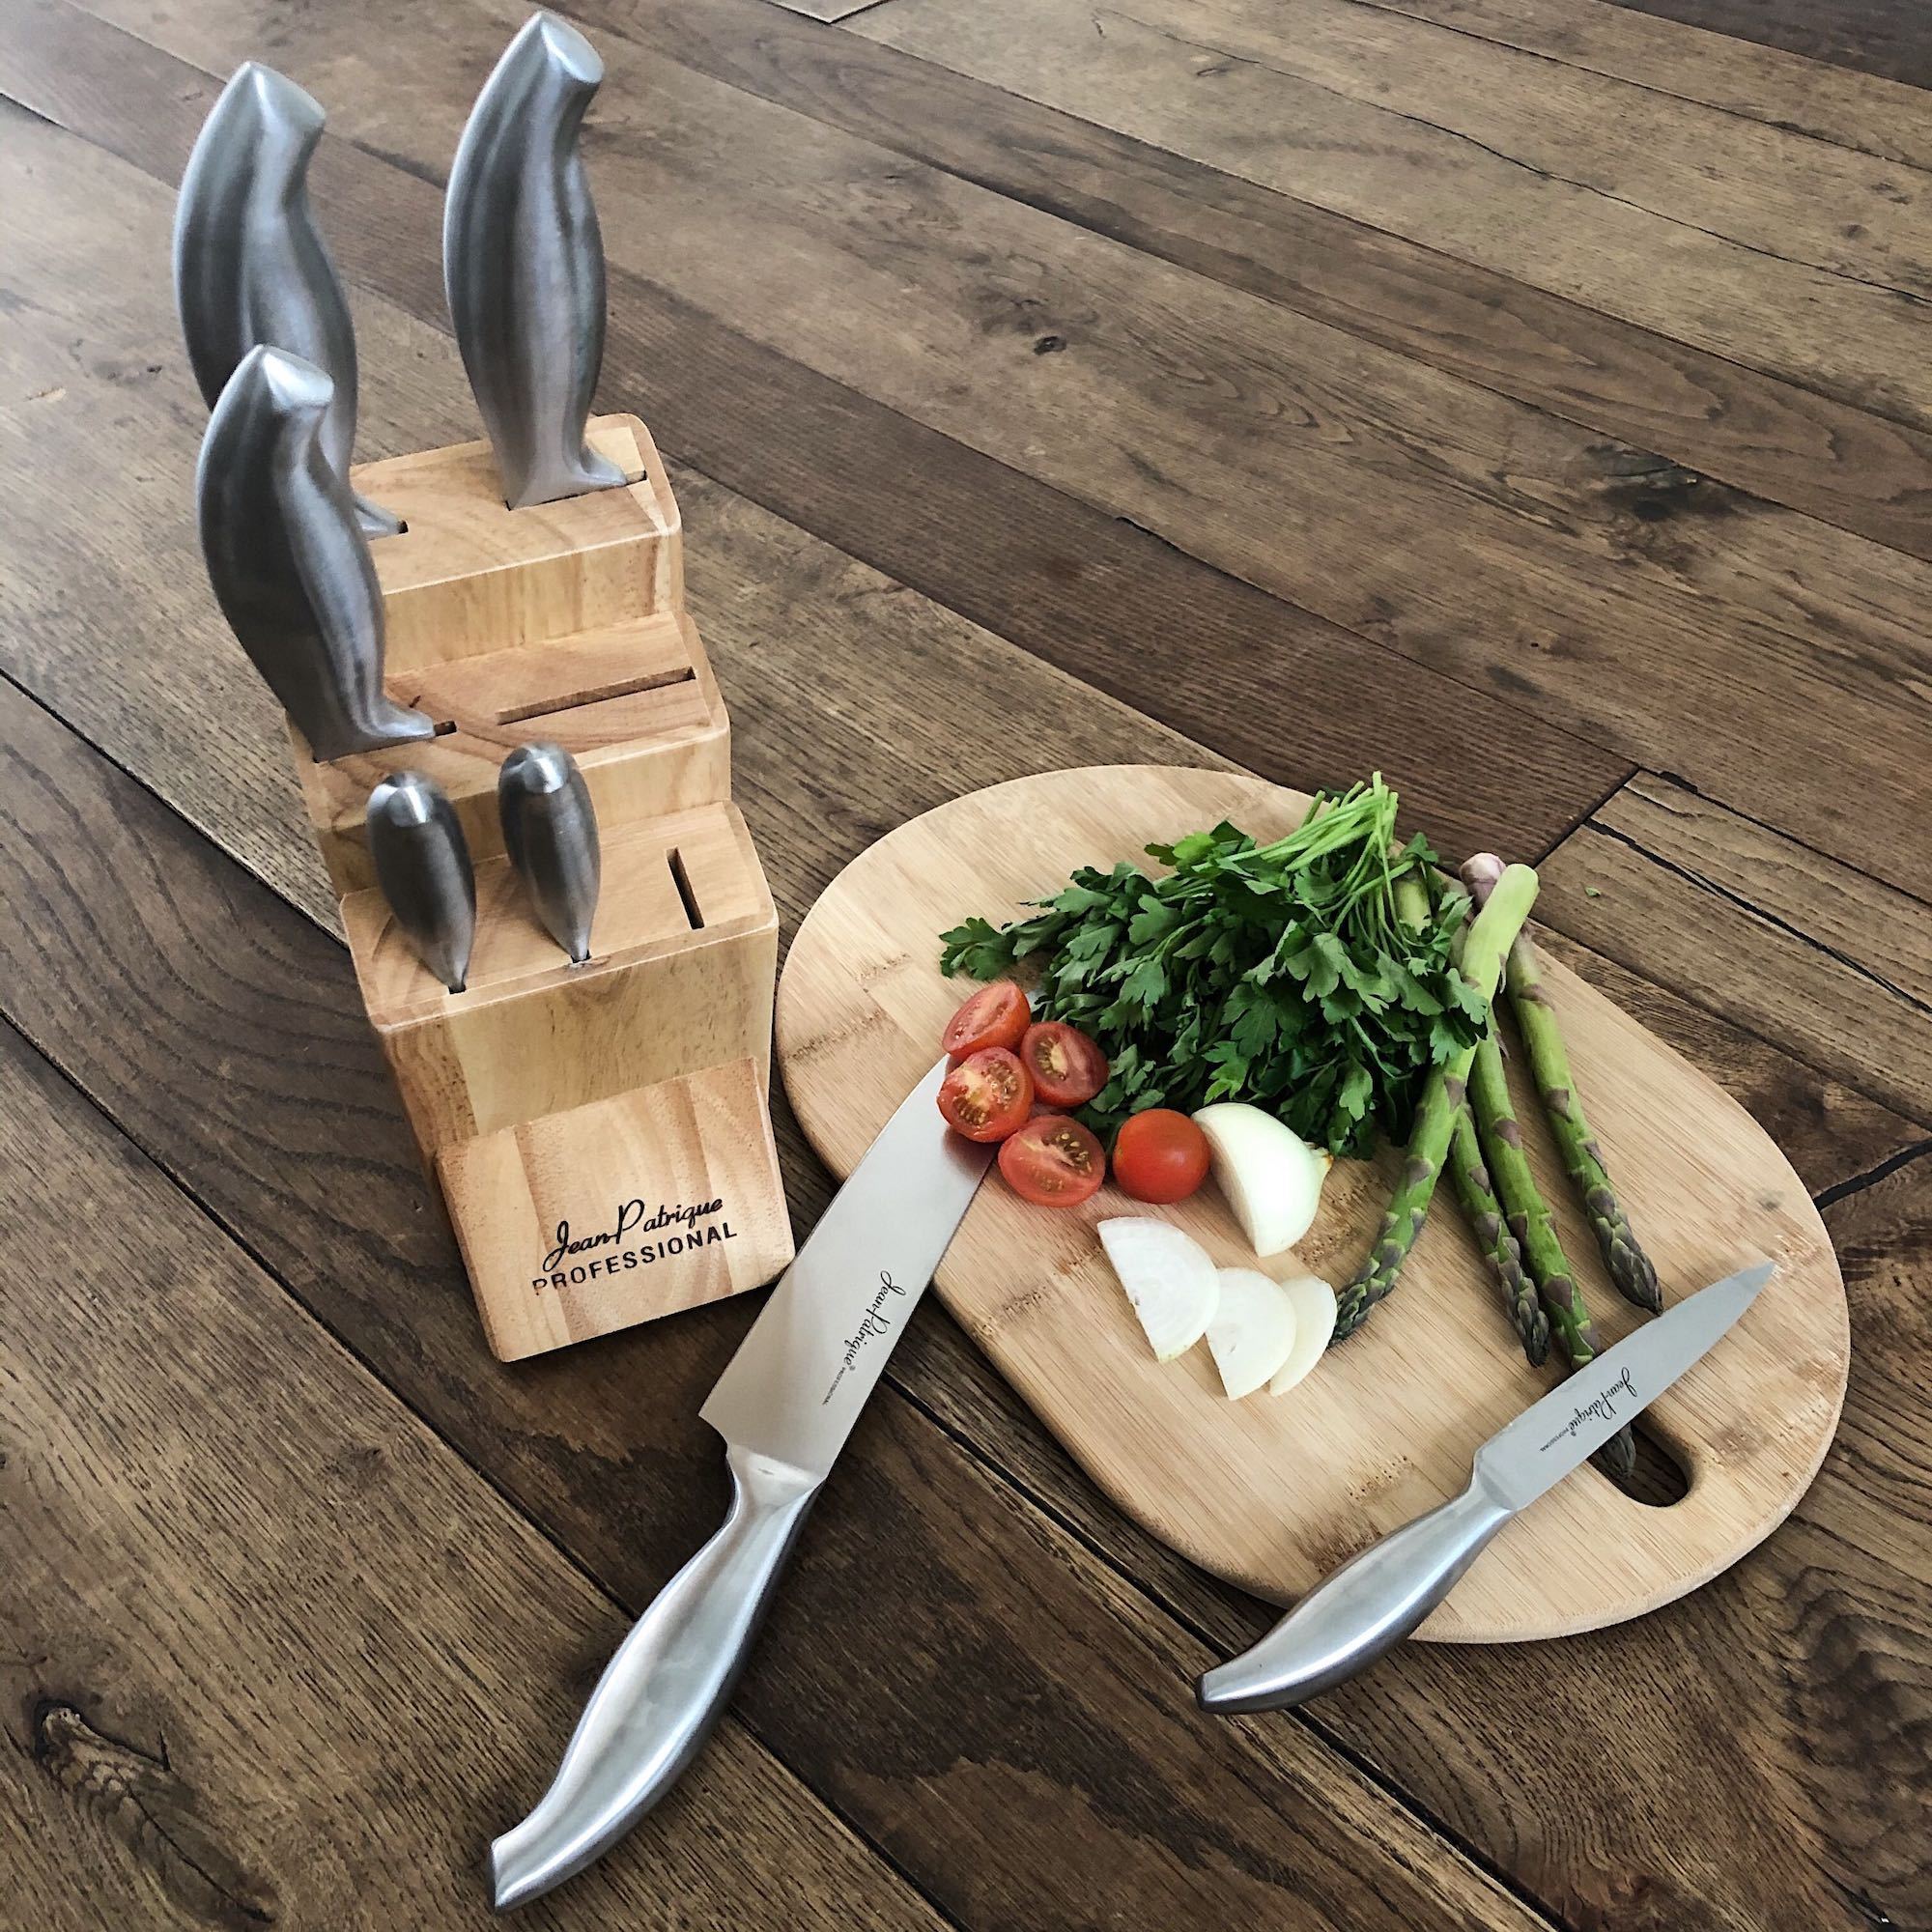 Professional Kitchen Knife Set & Wooden Knife Block - Set of 7